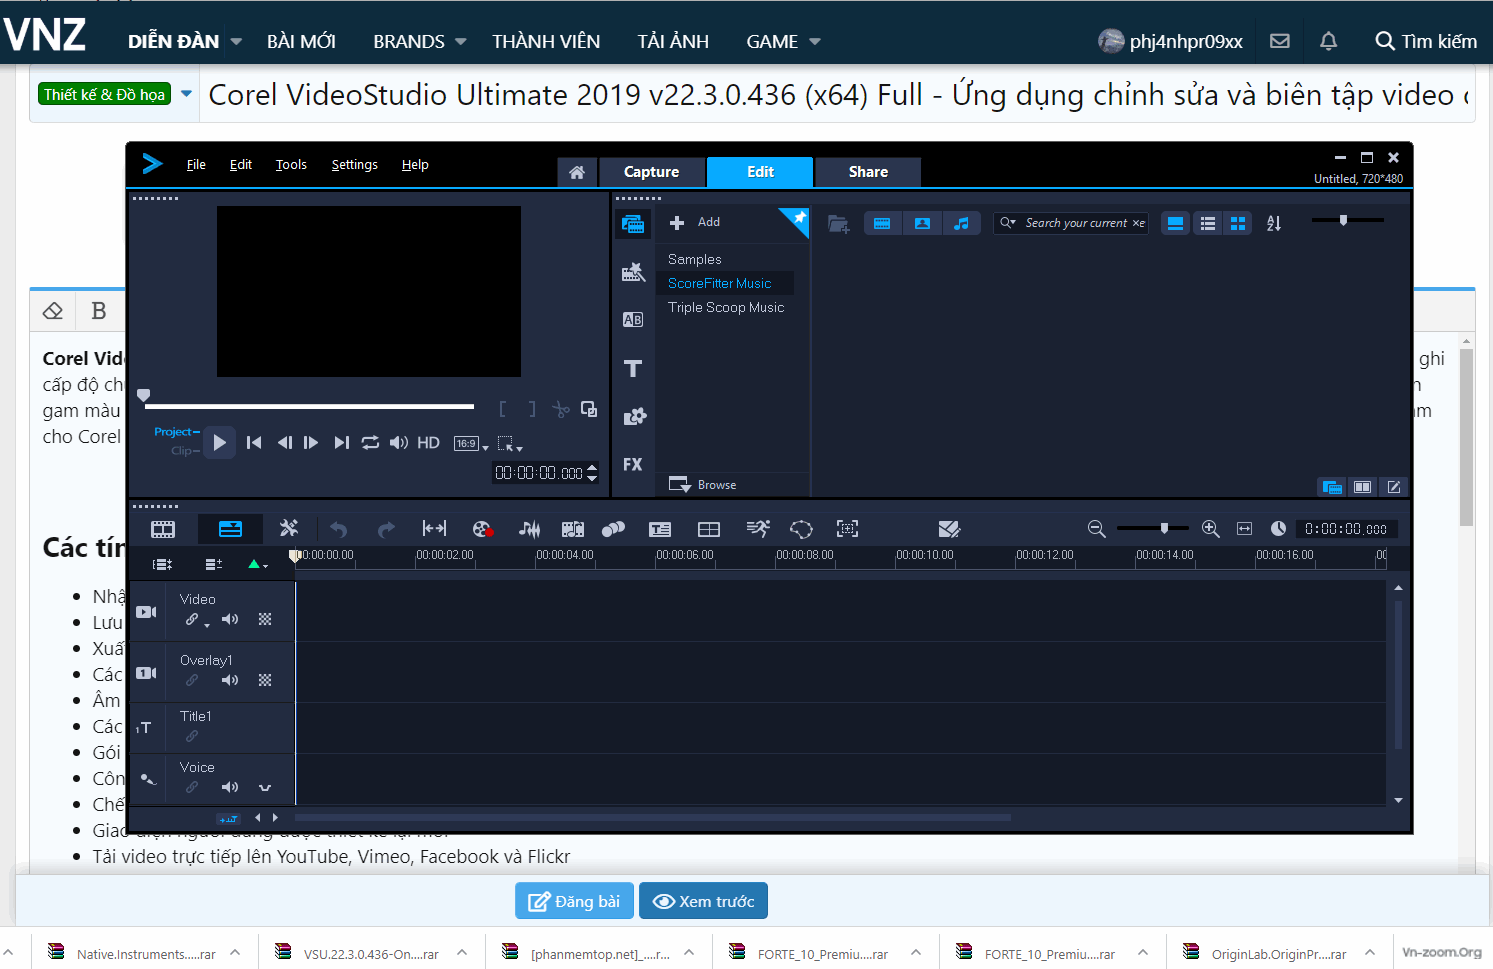 Corel VideoStudio Ultimate 2019 v22.3.0.439 (x64) Full - Ứng dụng chỉnh sửa và biên tập video cao cấp 1aeef2a5d9da2ba5c